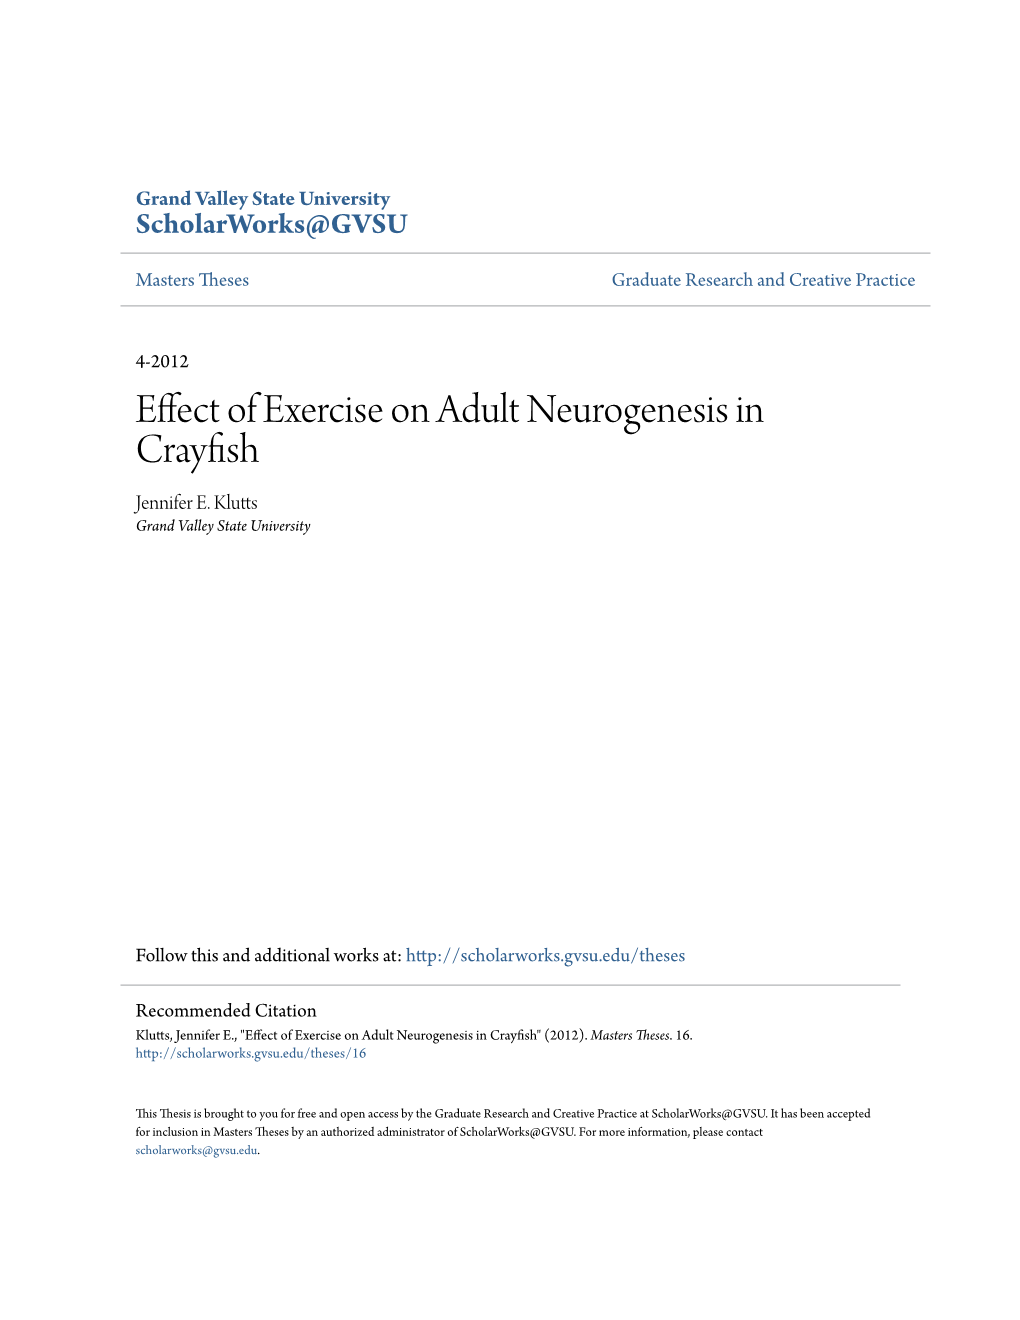 Effect of Exercise on Adult Neurogenesis in Crayfish Jennifer E